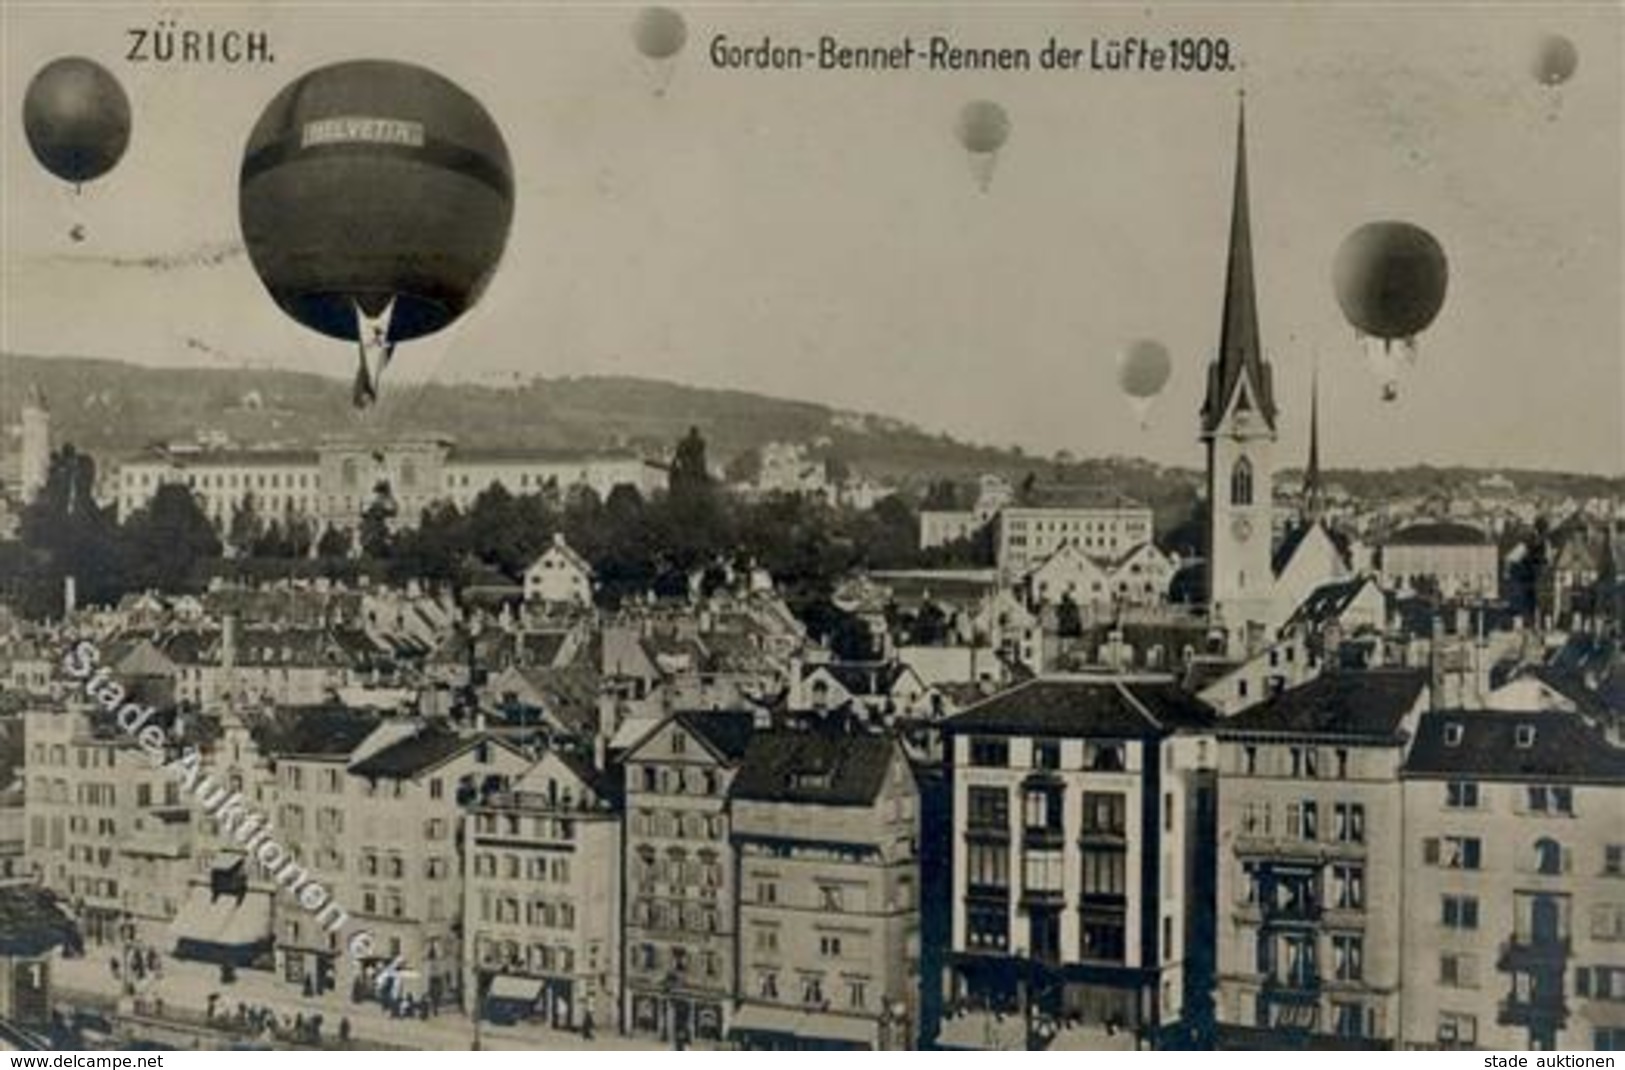 Ballon Gordon Bennett Wettfliegen Foto AK 1909 I-II - Balloons